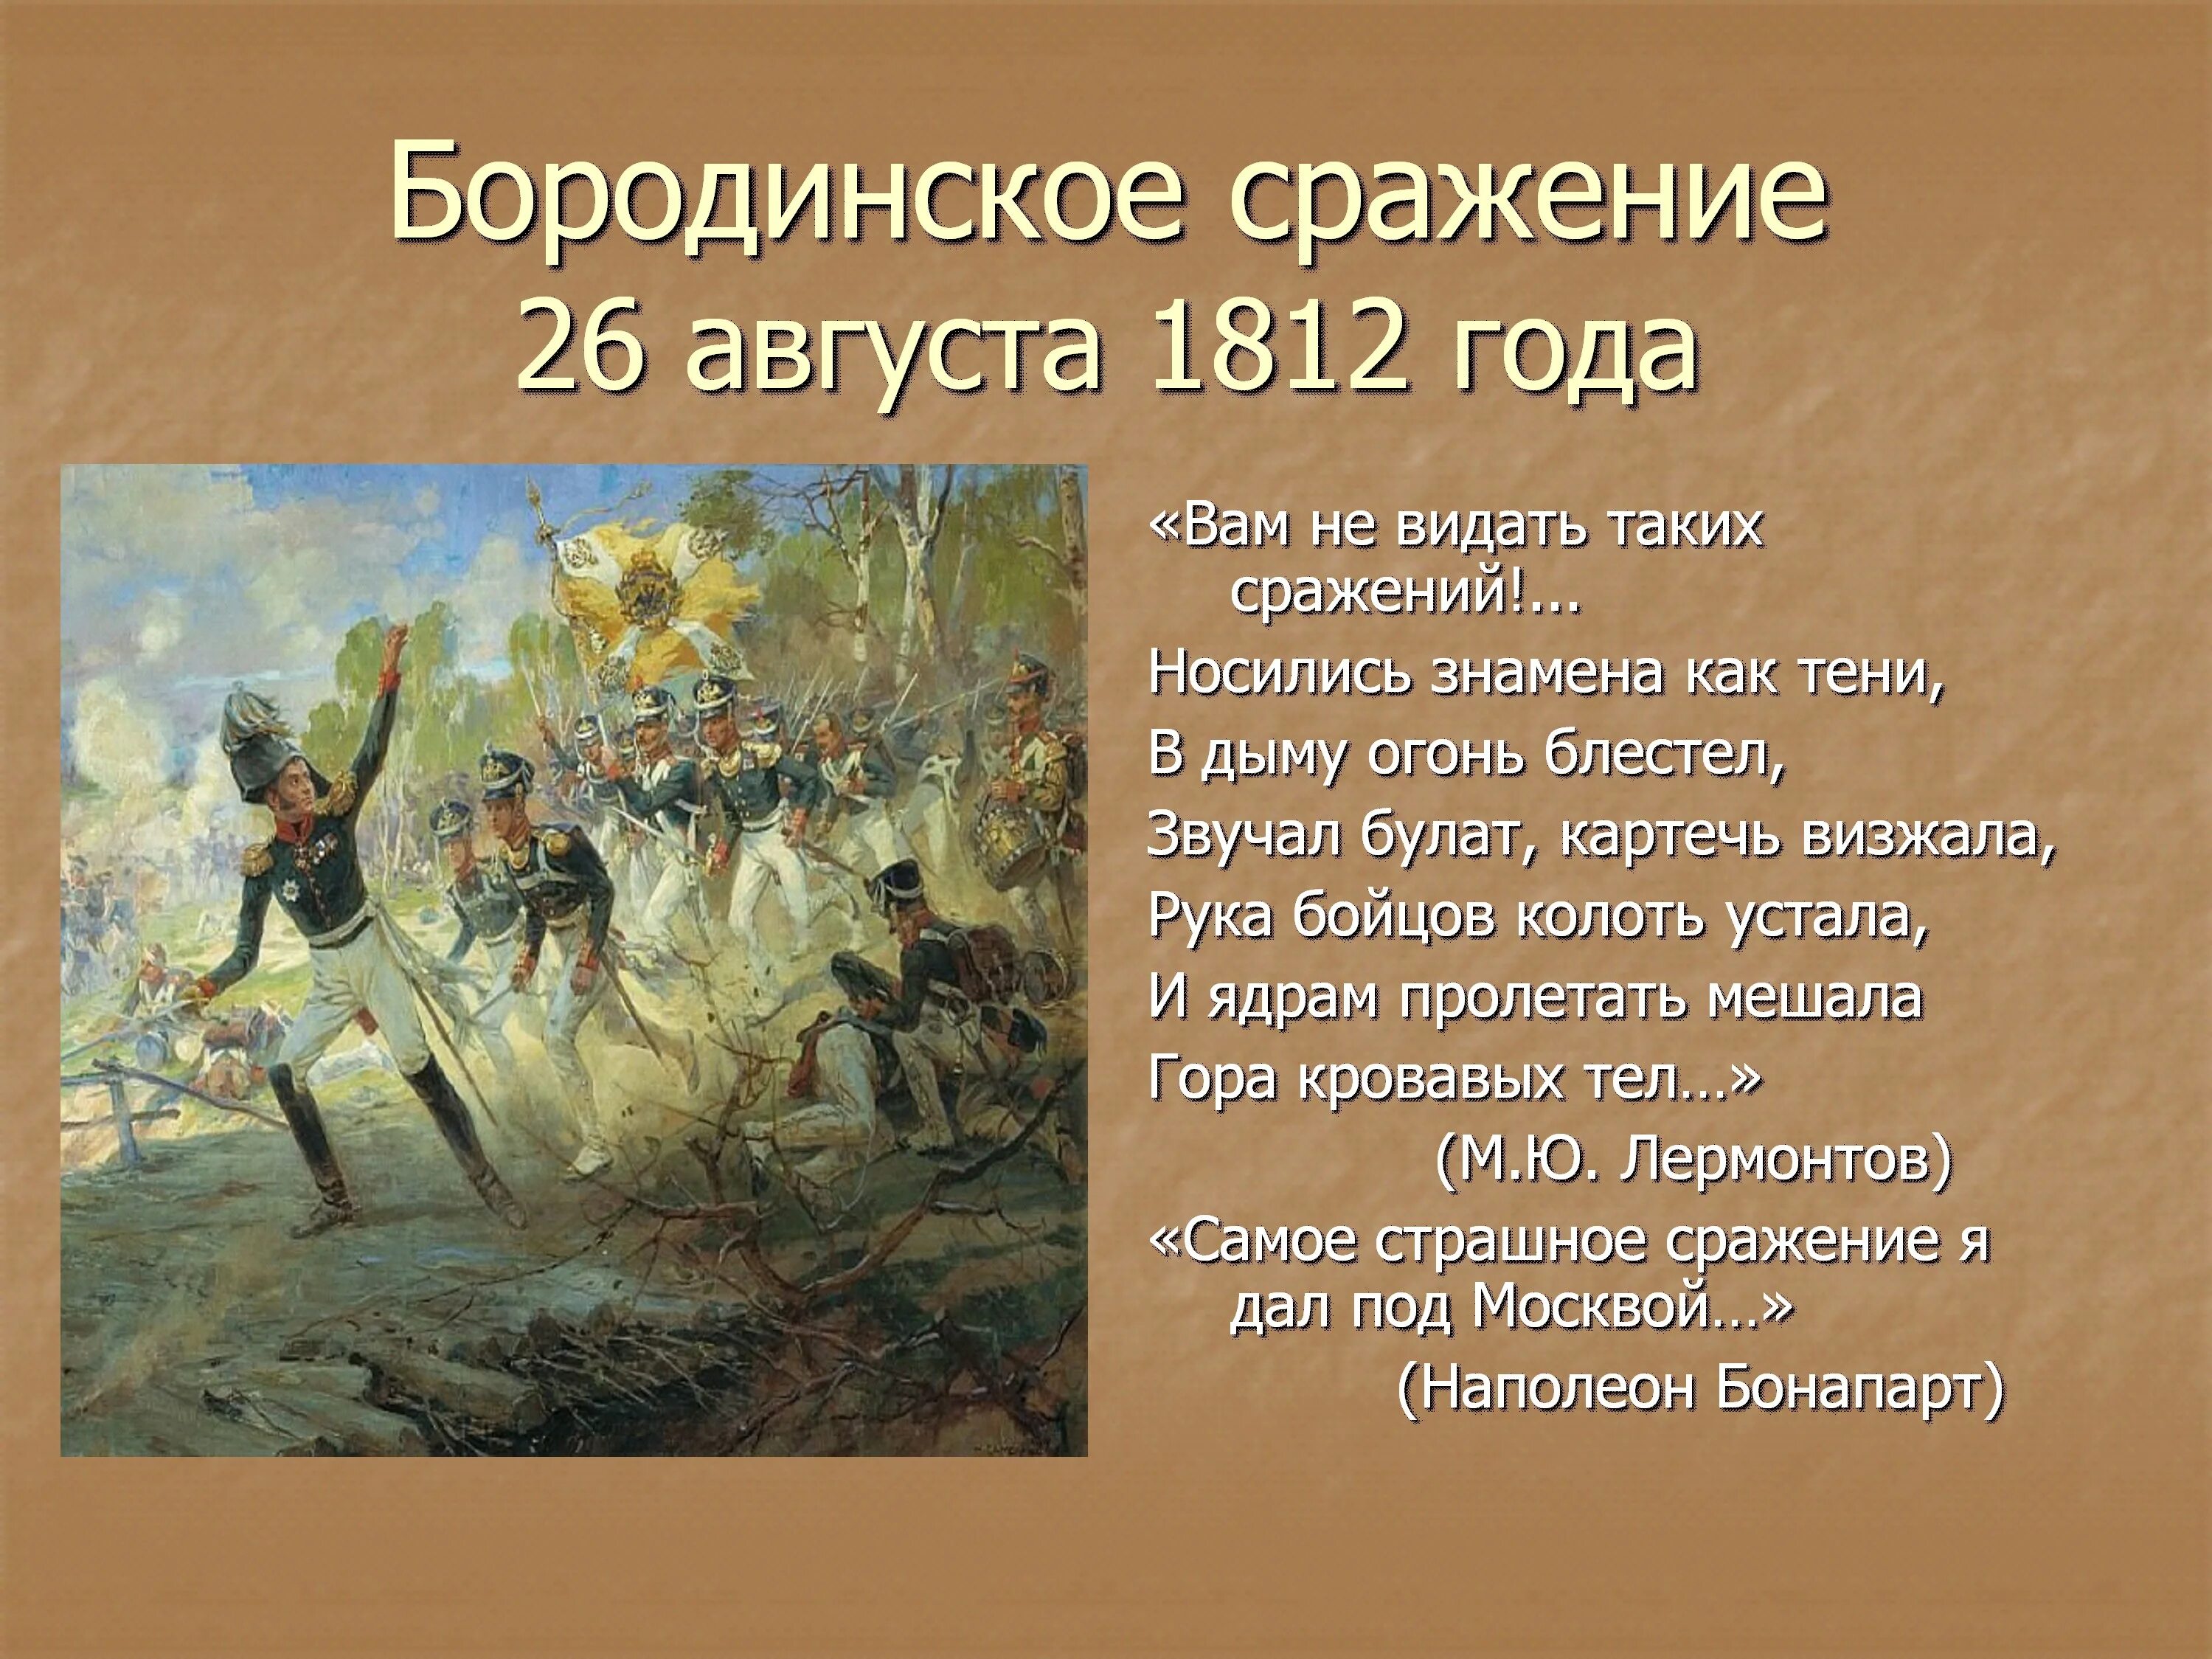 Про войну 1812 года 4 класс. Бородино 26 августа 1812. Сражение войны 1812 года 26 августа. Бородинское сражение в войне 1812 г..